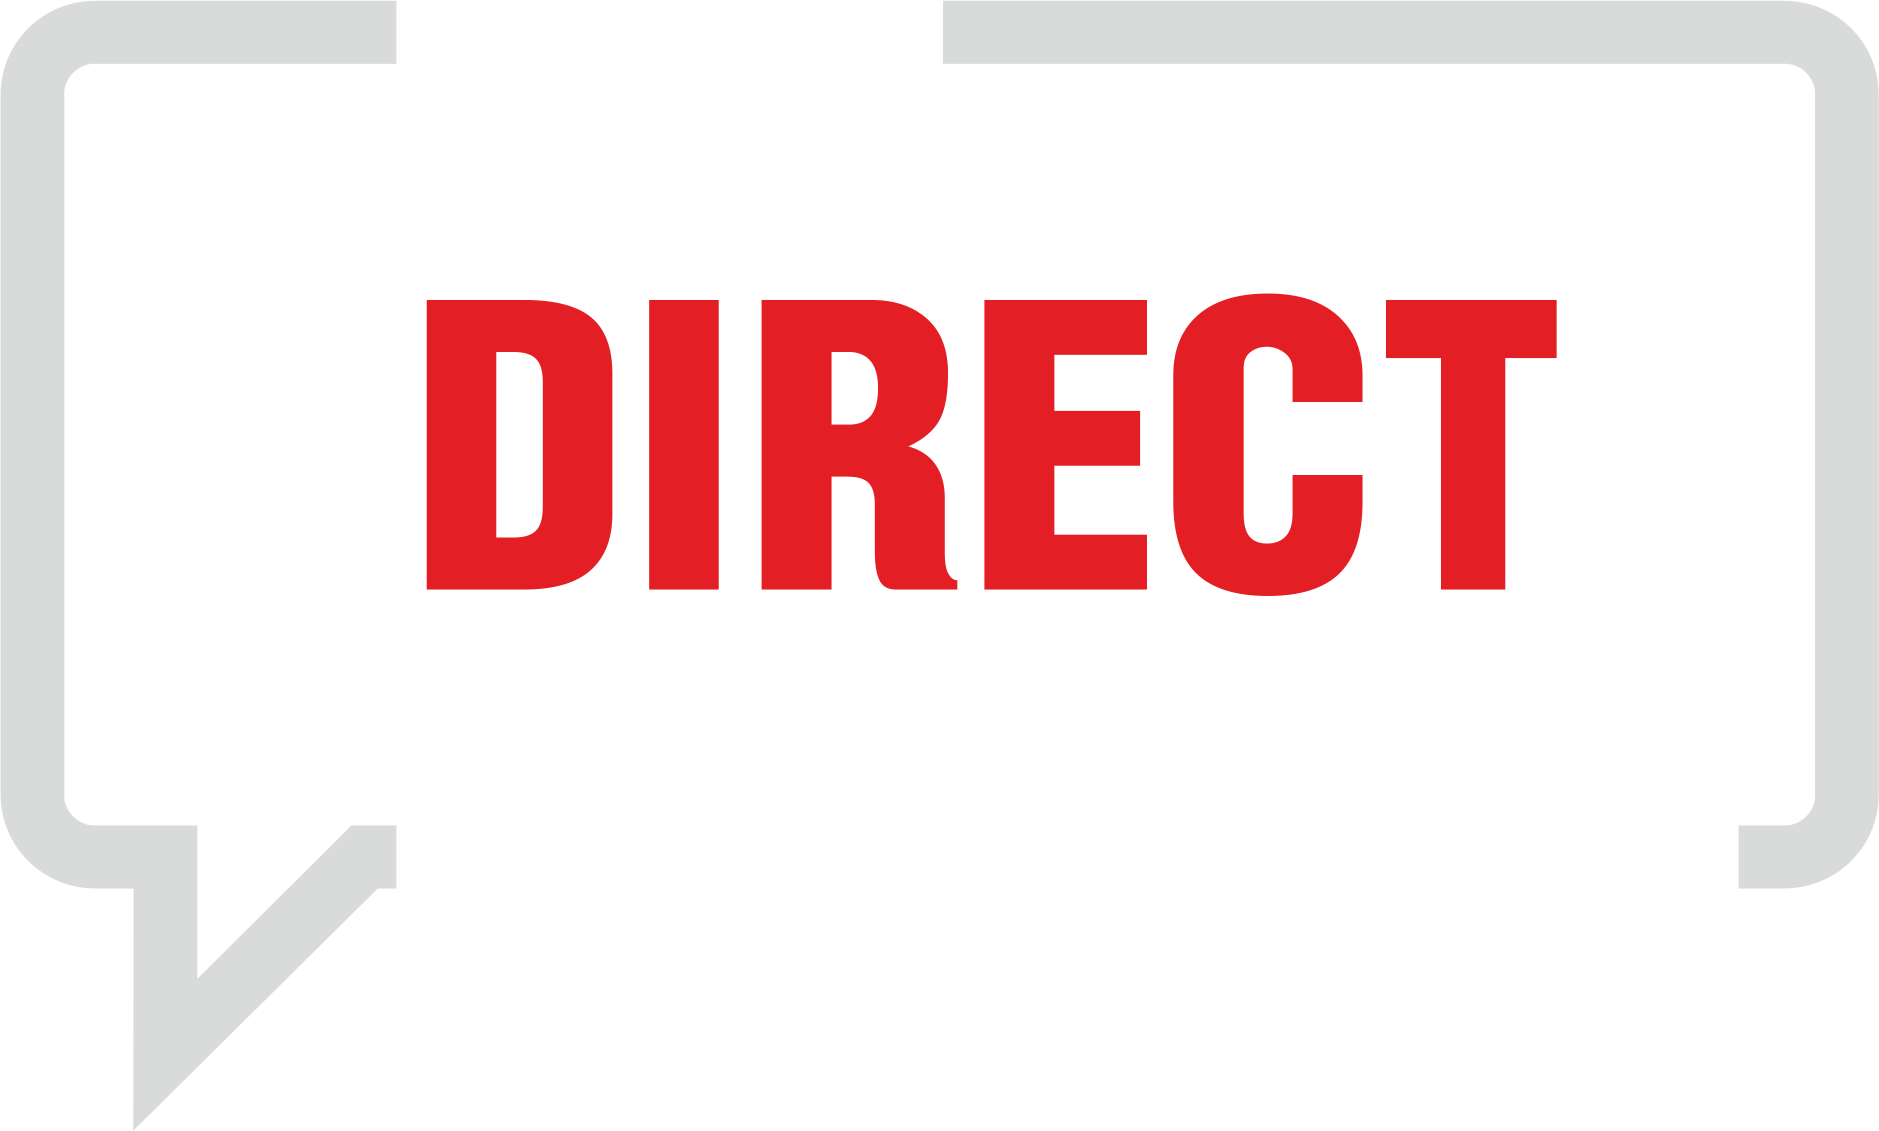 Company logo of Direct Repair